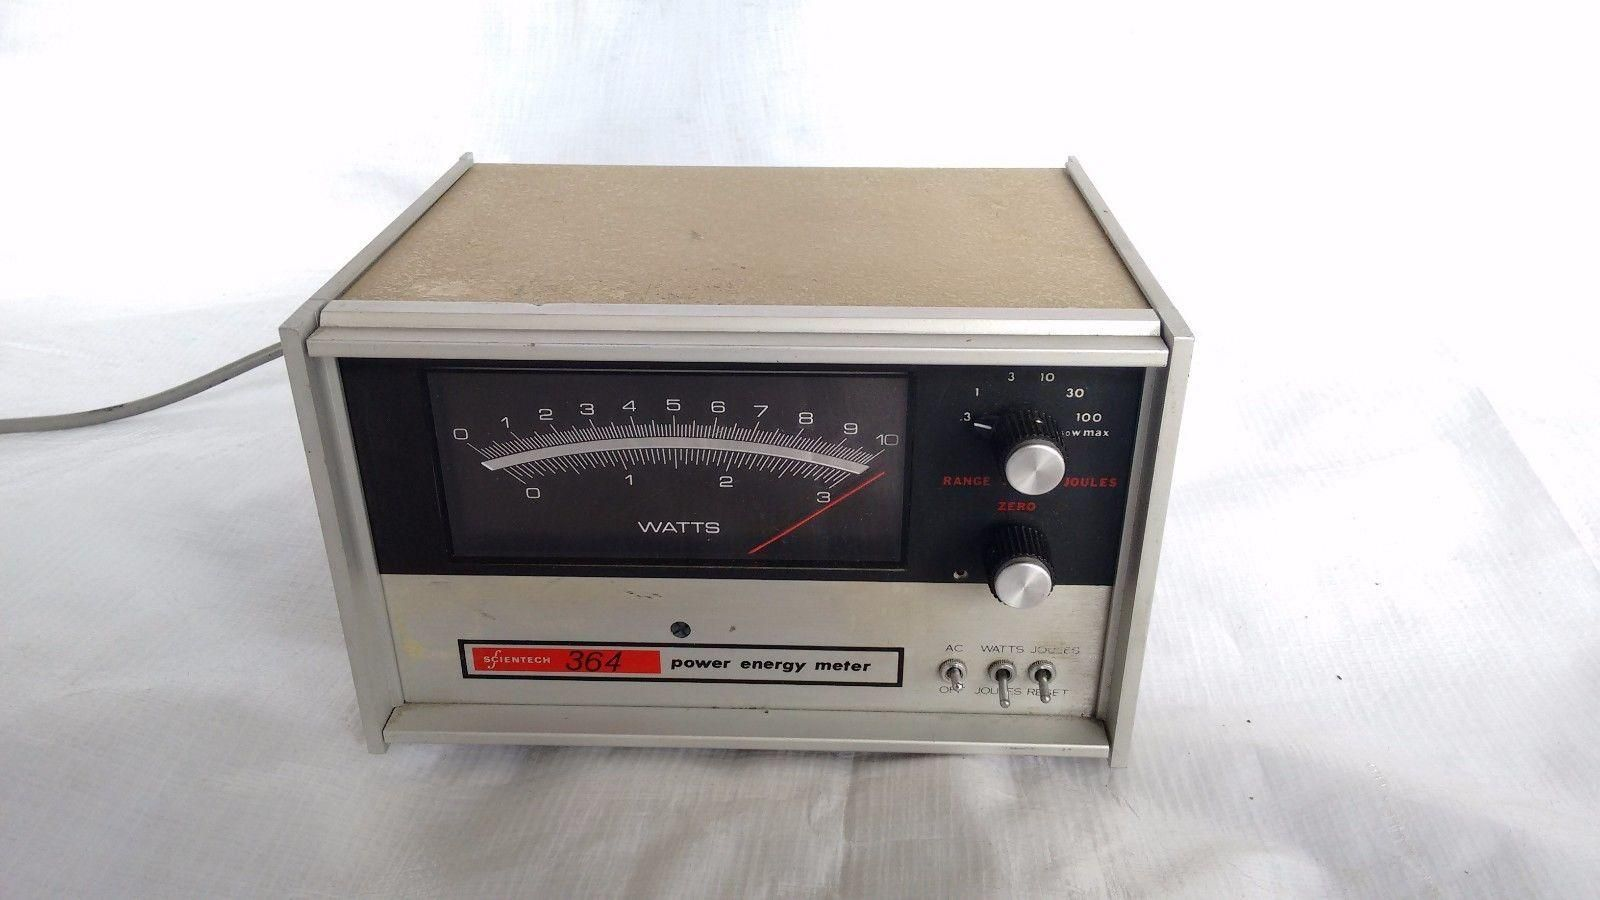 Scientech Model 364 Power Energy Meter